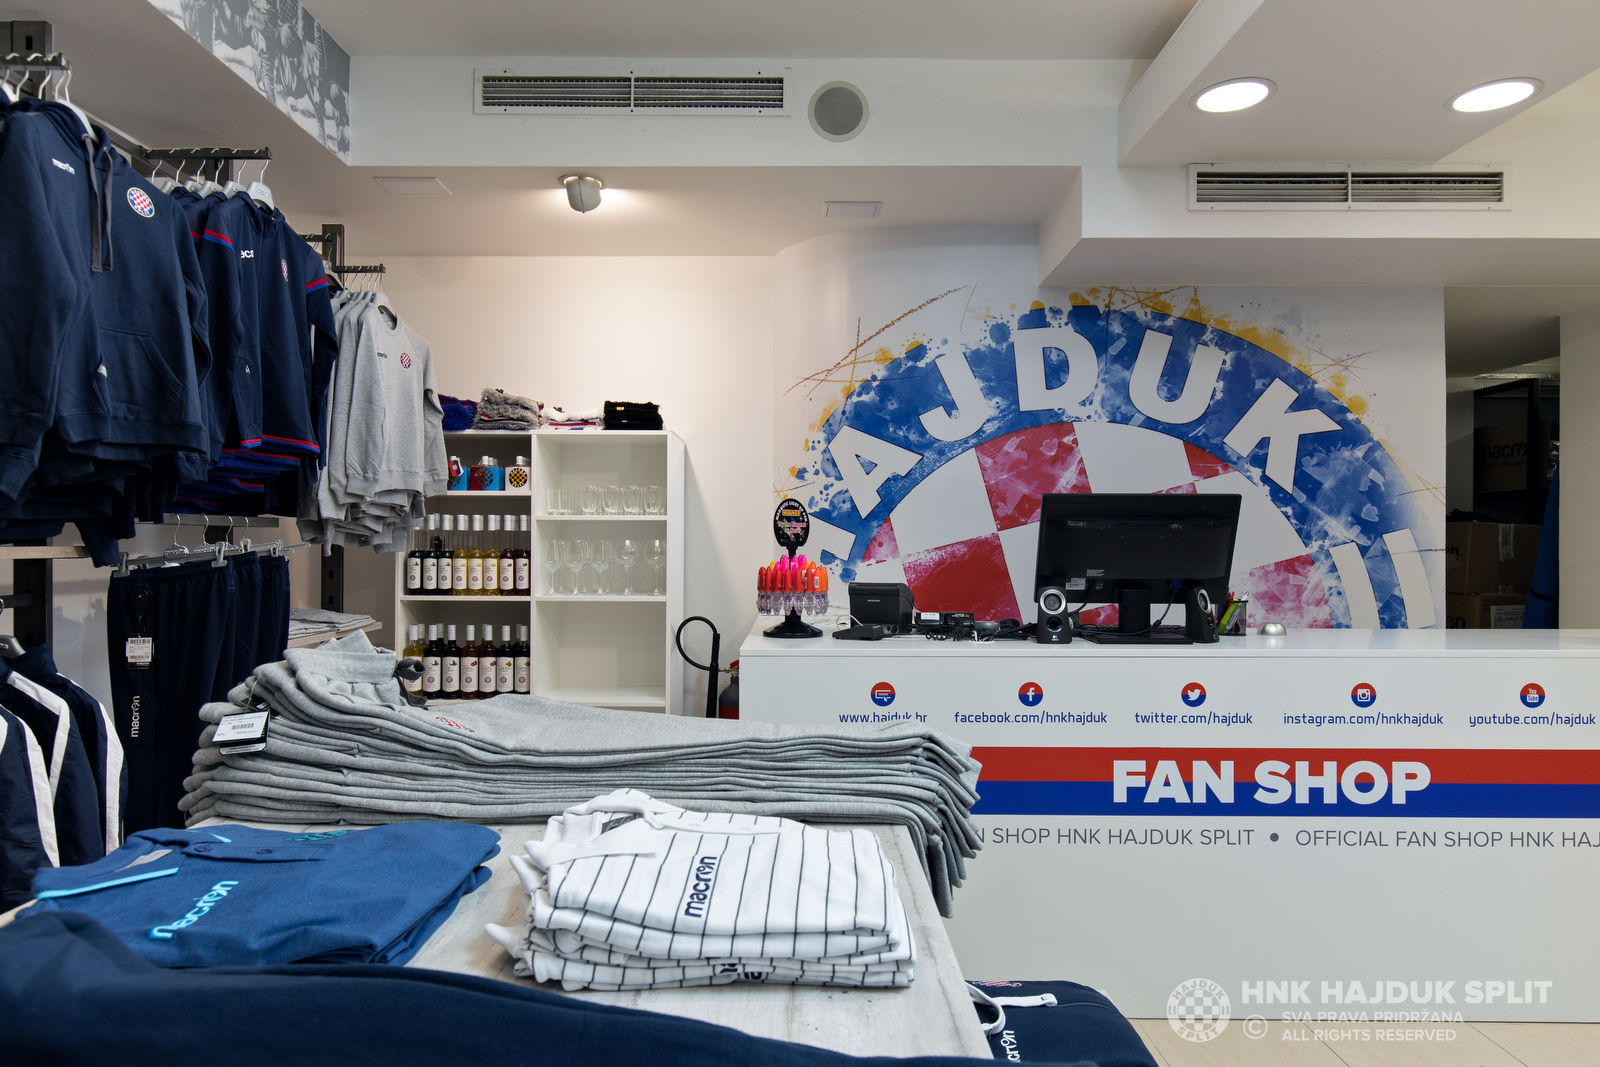 New Hajduk Fan Shop in the city centre! • HNK Hajduk Split